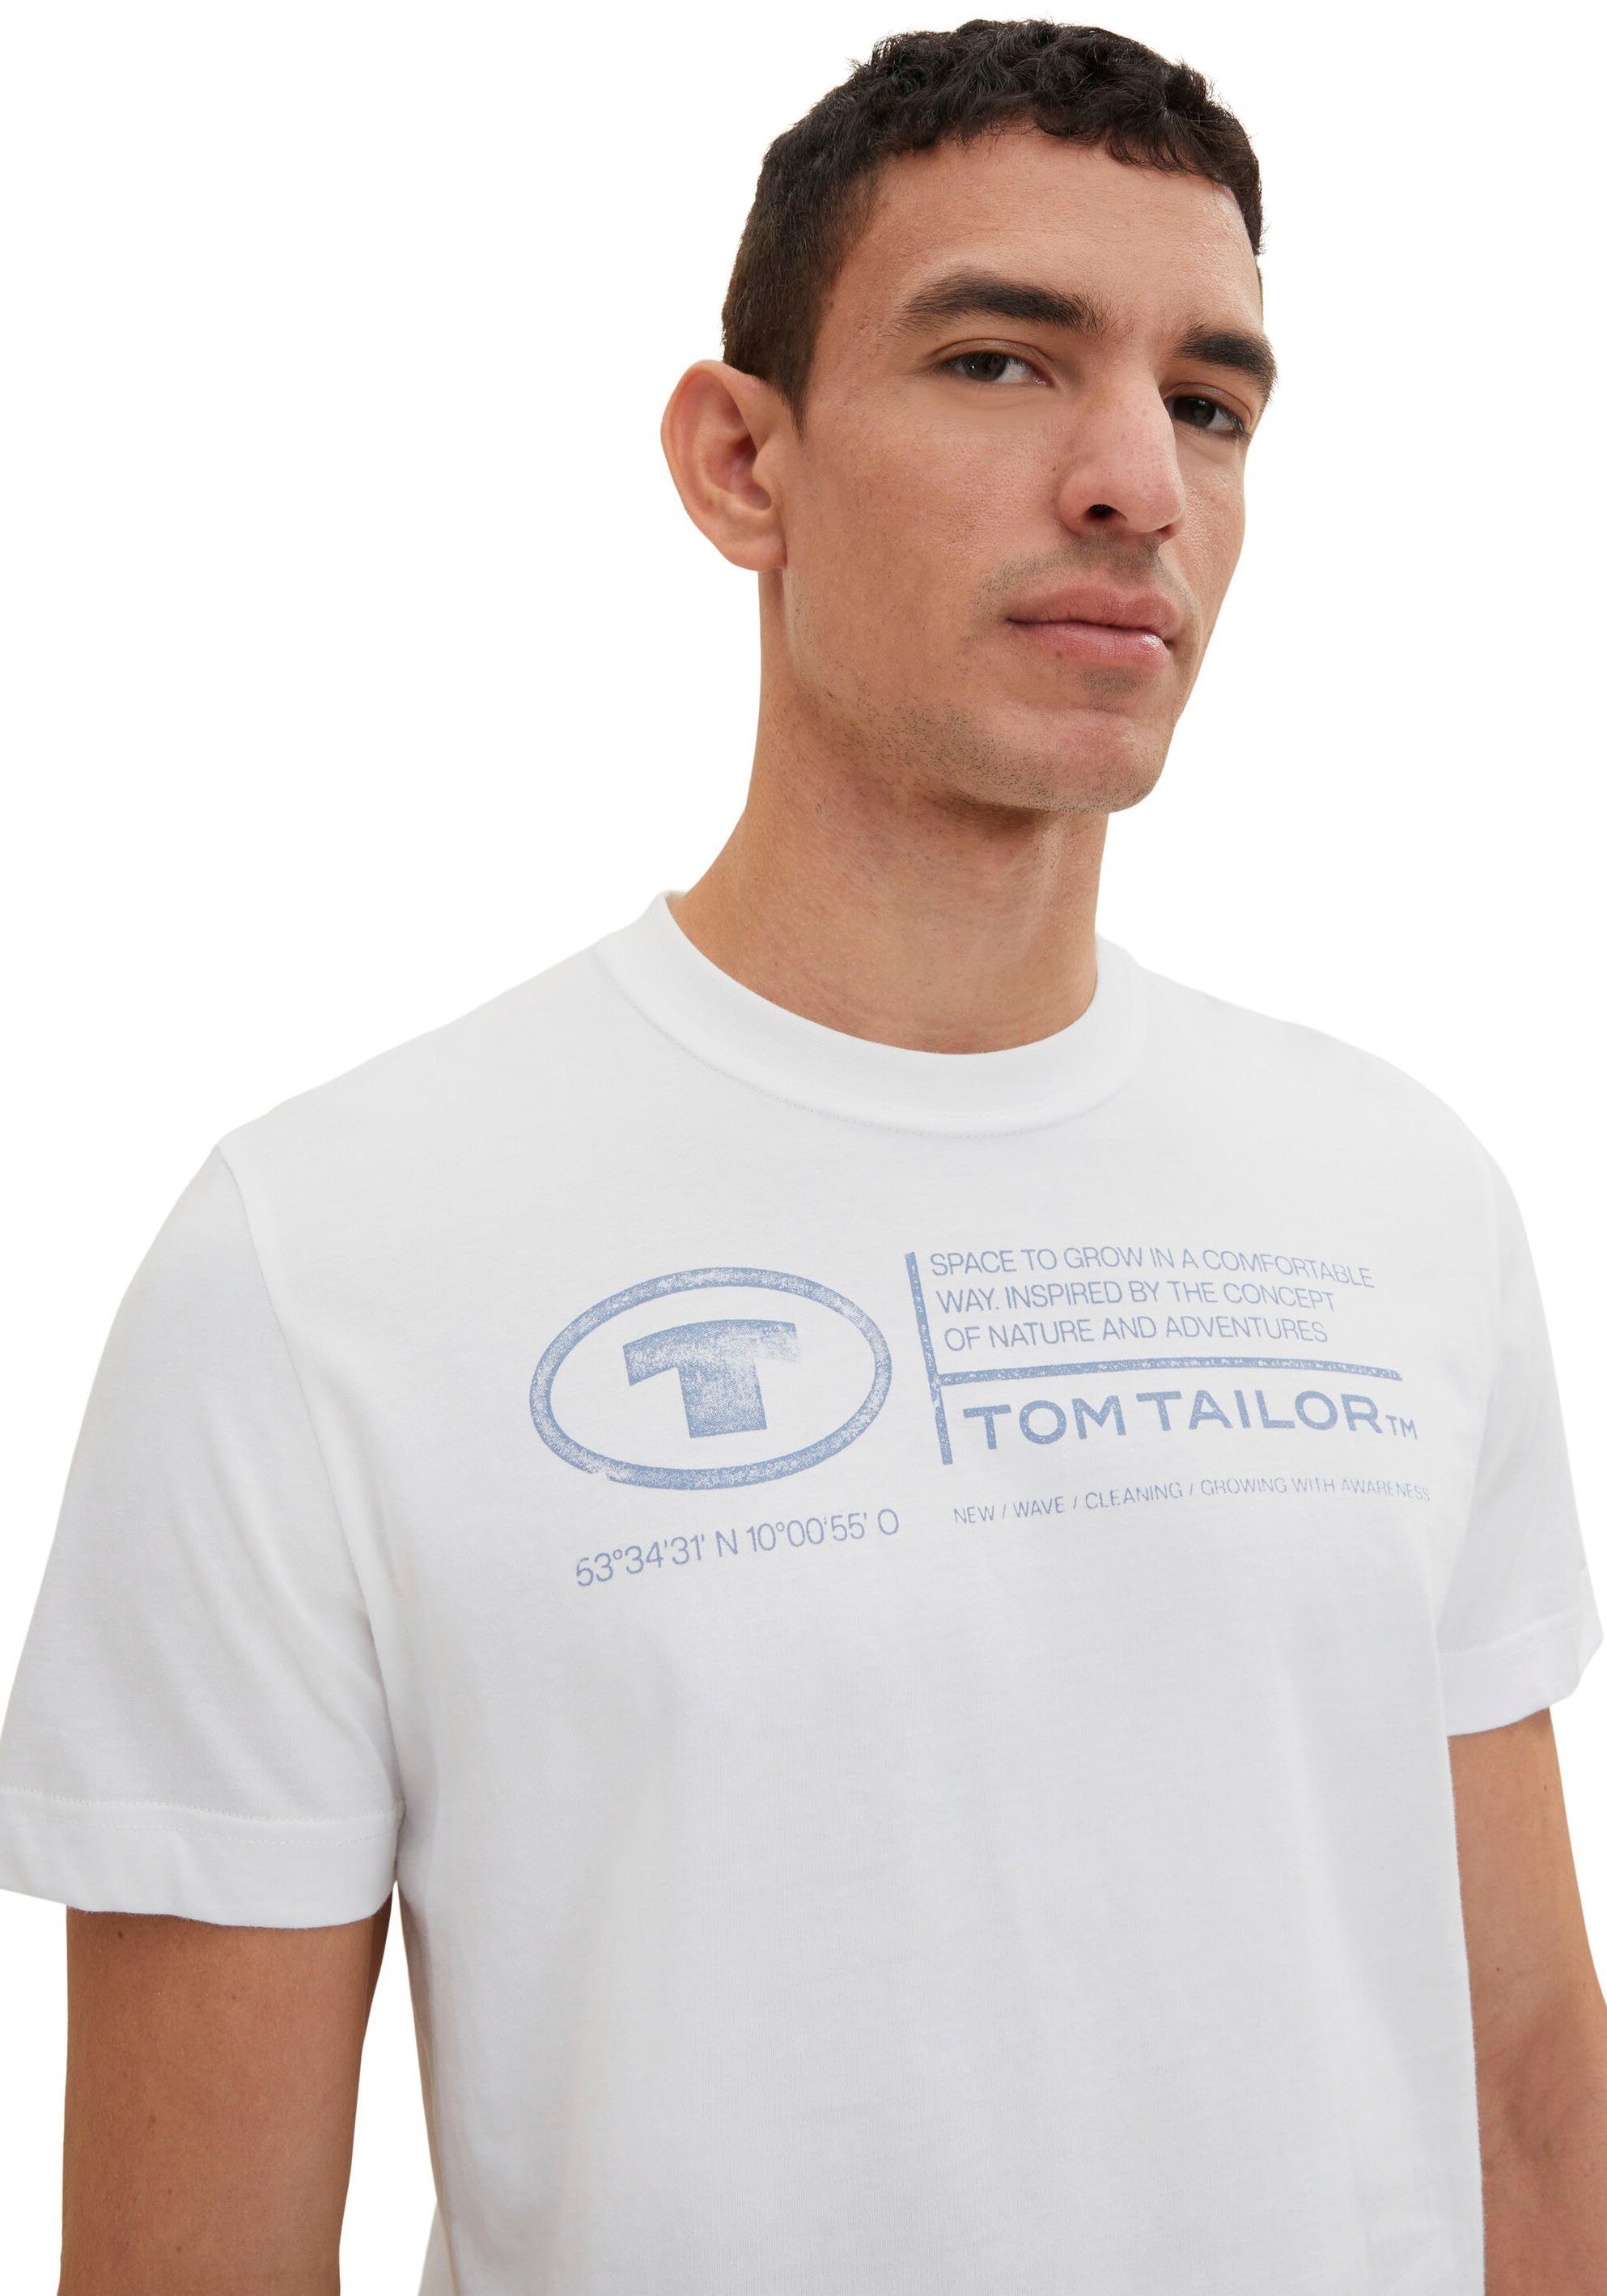 TOM TAILOR Herren Print-Shirt Frontprint T-Shirt Tom weiß Tailor